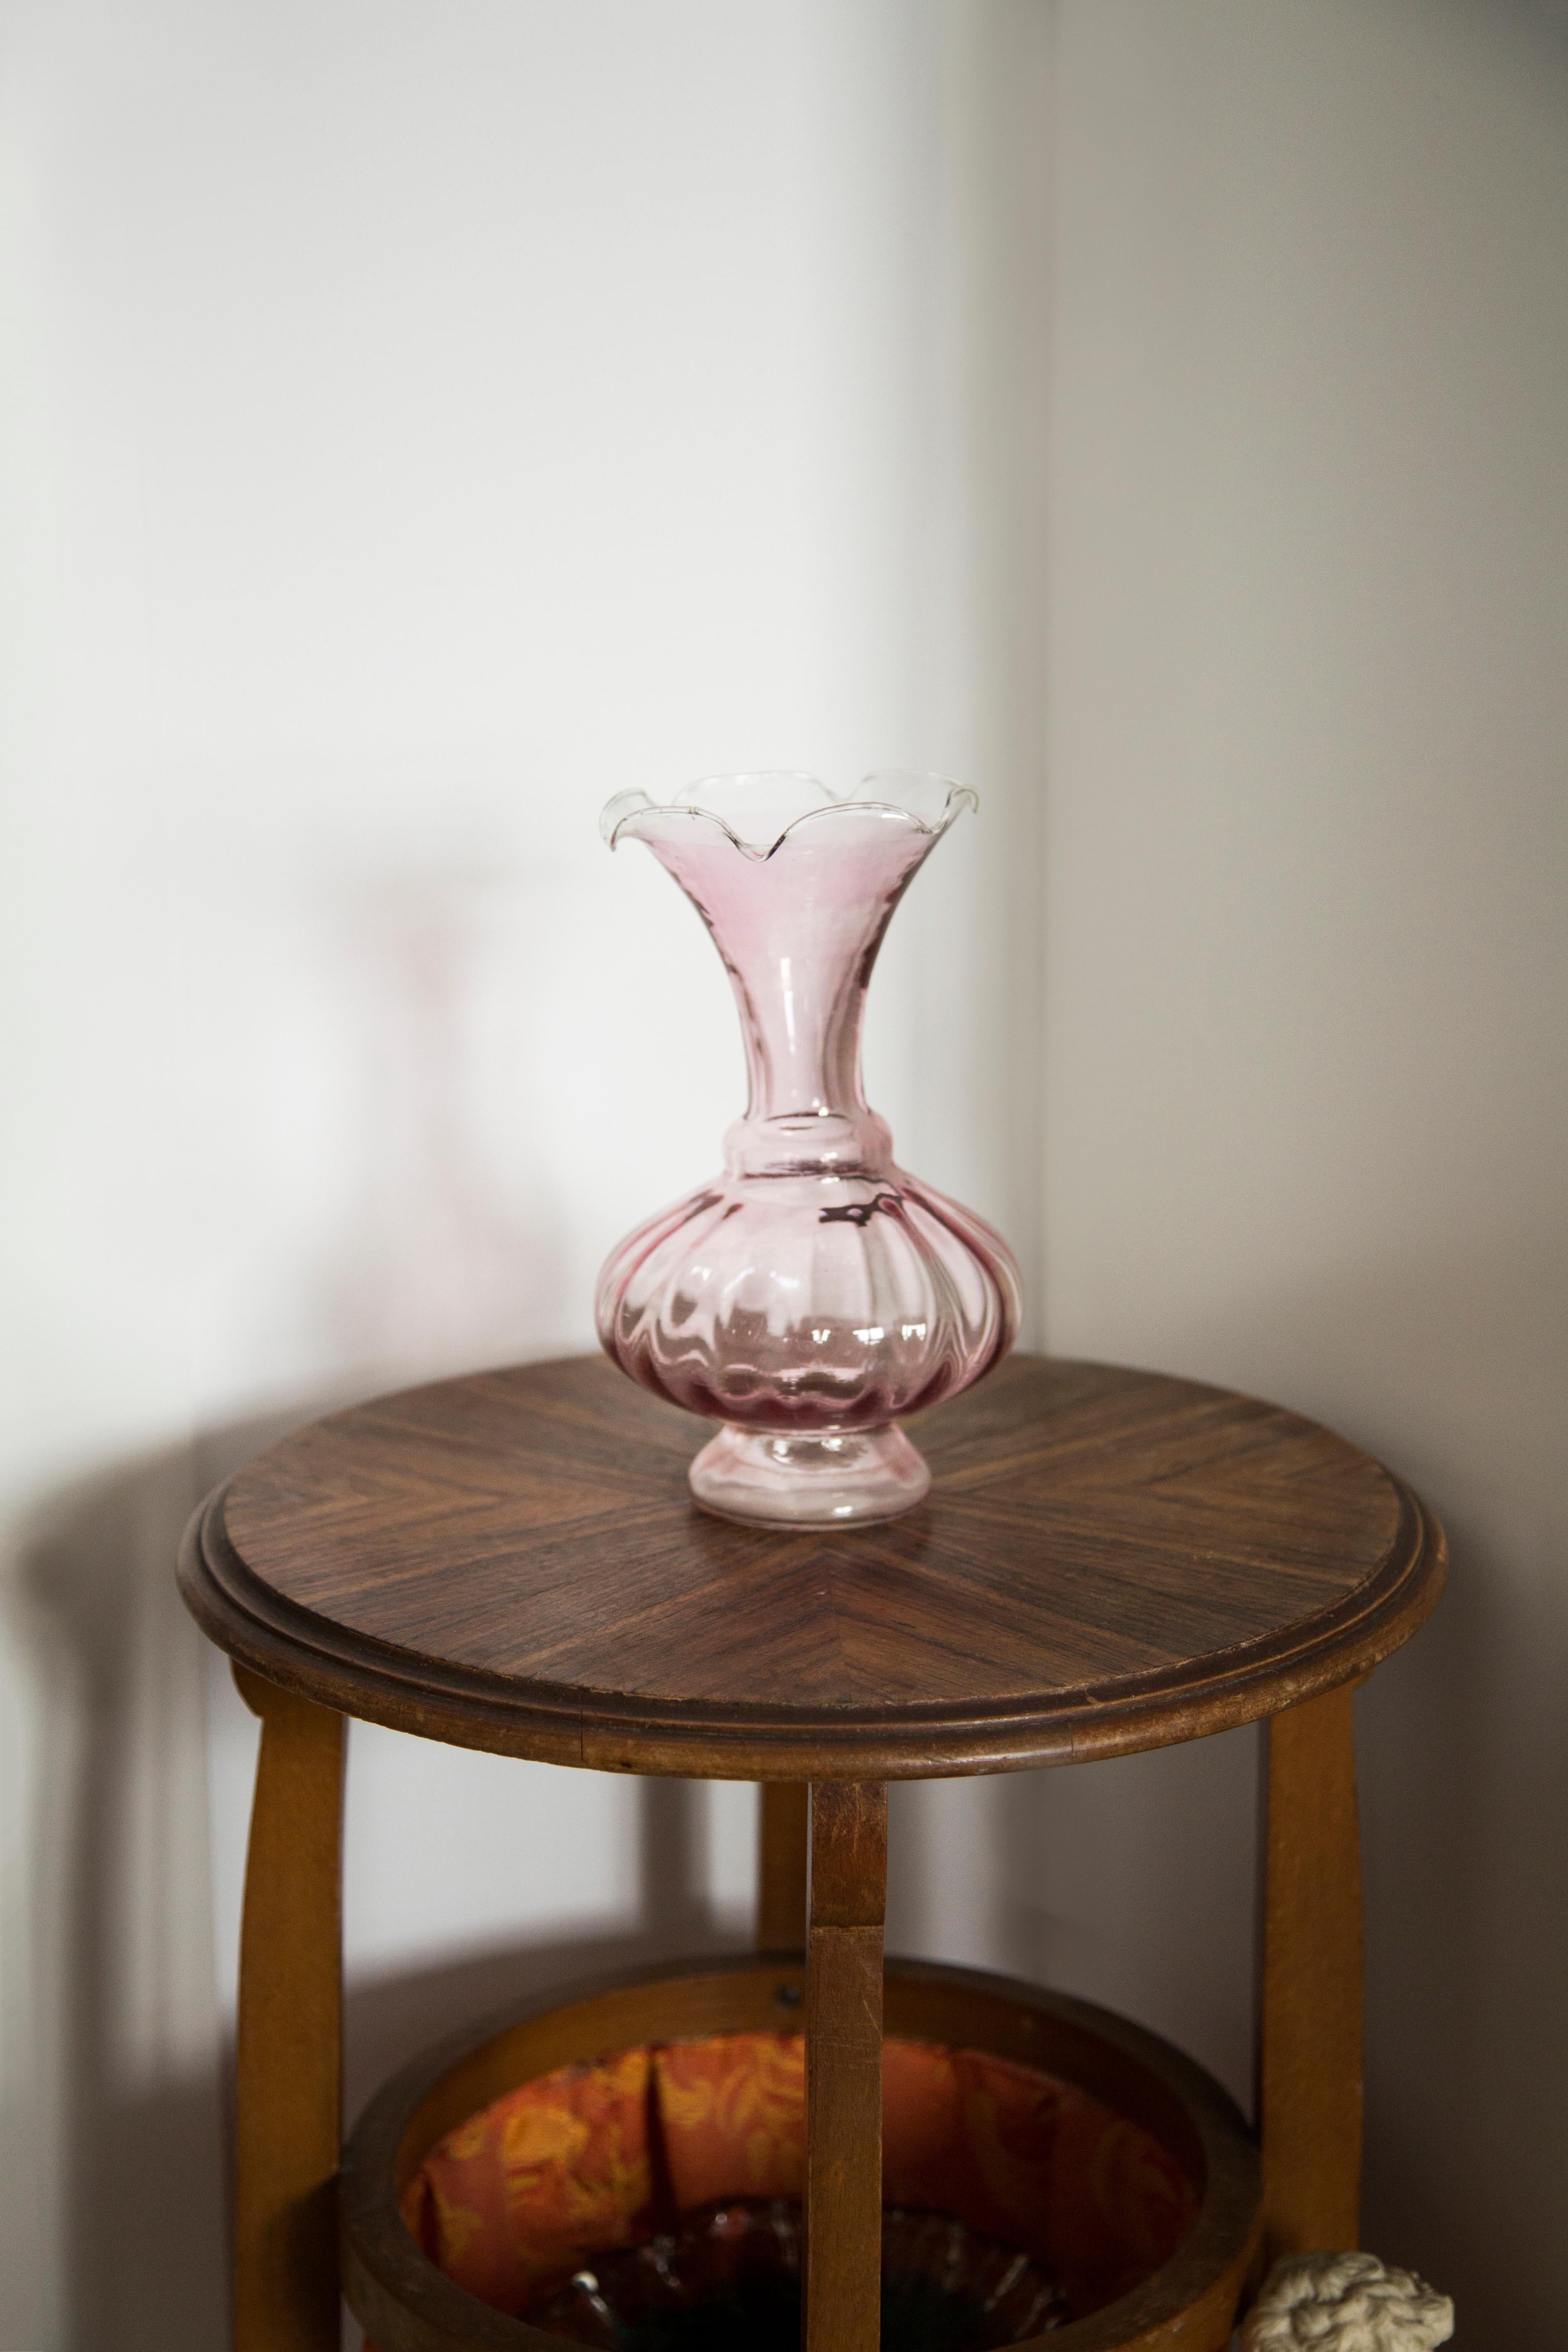 Eine schöne Mid-Century Modern Vase aus weißem Glas aus den 1960er Jahren.
Original Vintage guter Zustand. Nur ein einziges Stück.